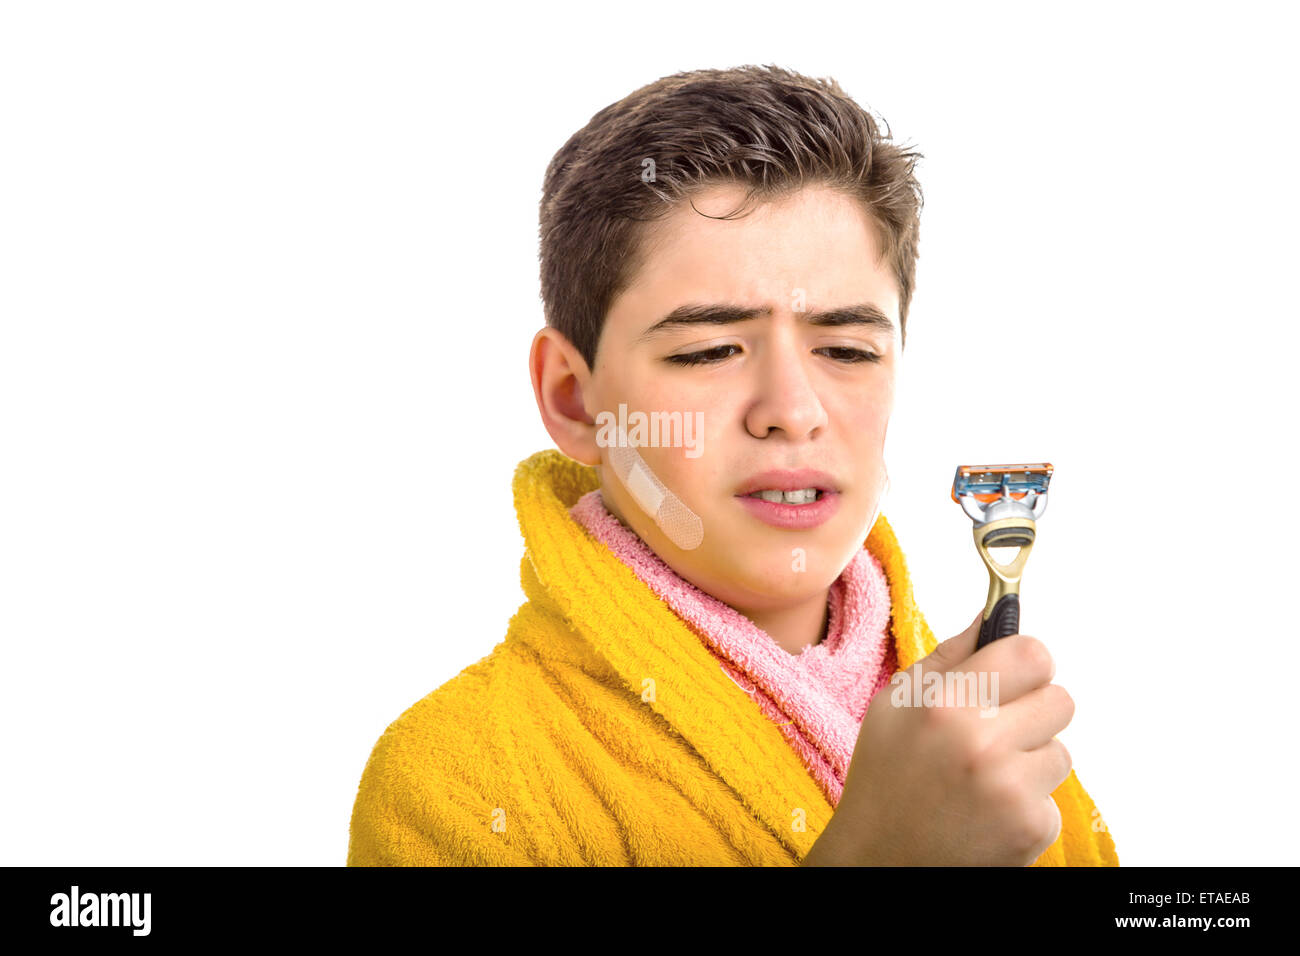 Un garçon de race blanche porte un peignoir jaune avec une serviette rose autour de son cou : il a des taches sur le visage et regarde tristement le rasoir qu'il a utilisé pour le rasage Banque D'Images